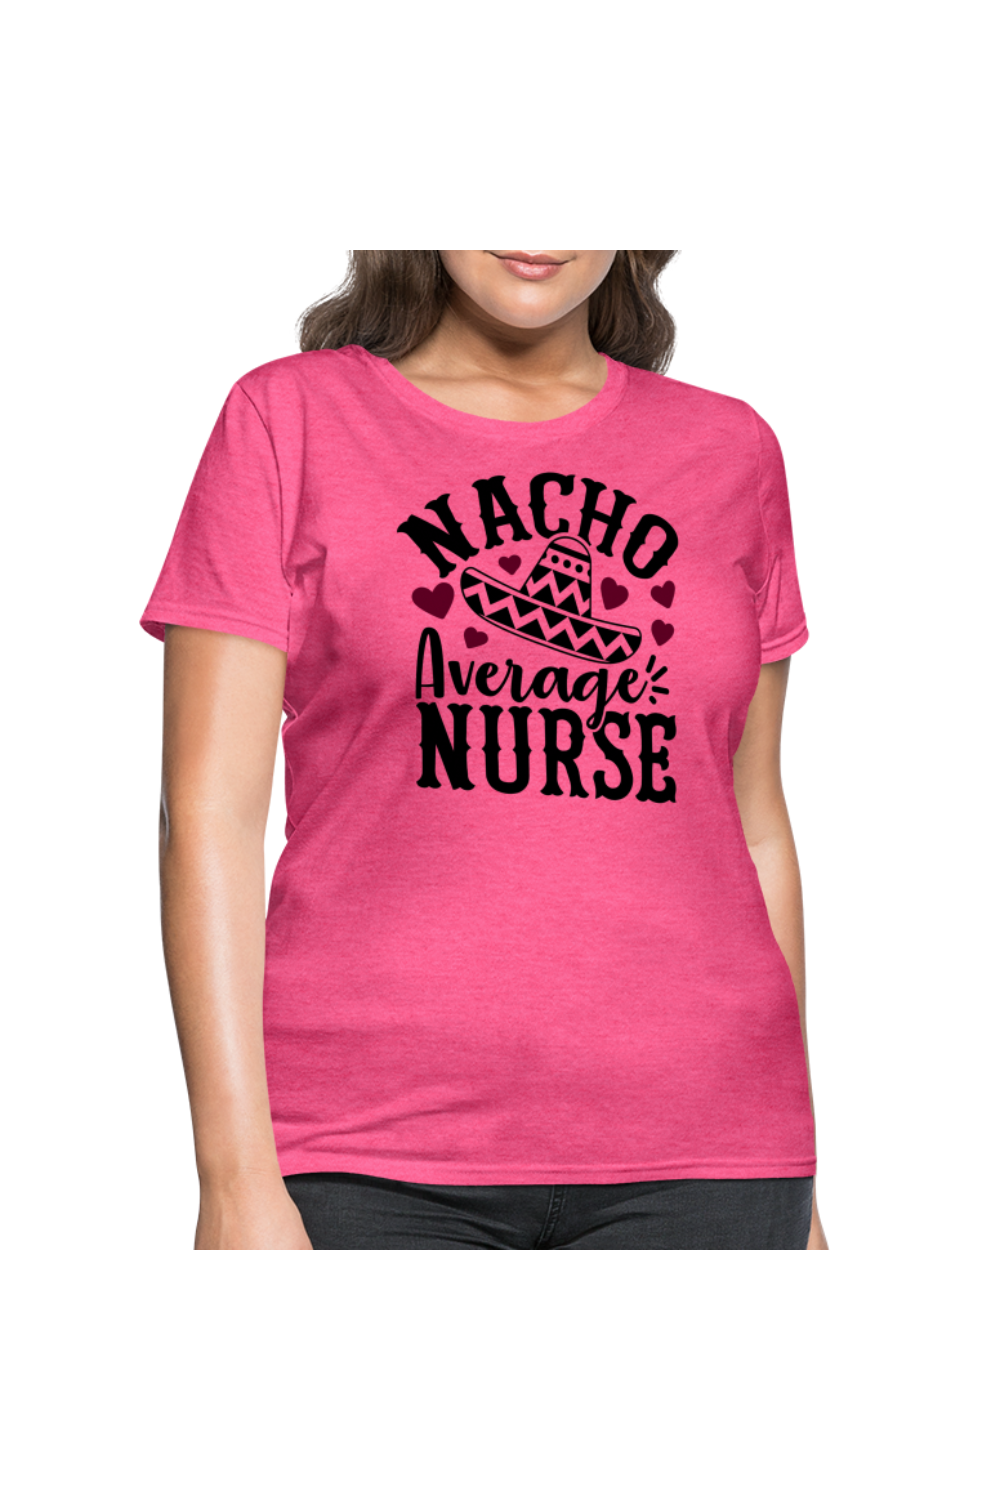 Nacho Average Nurse Women's Nurse T-Shirt - heather pink